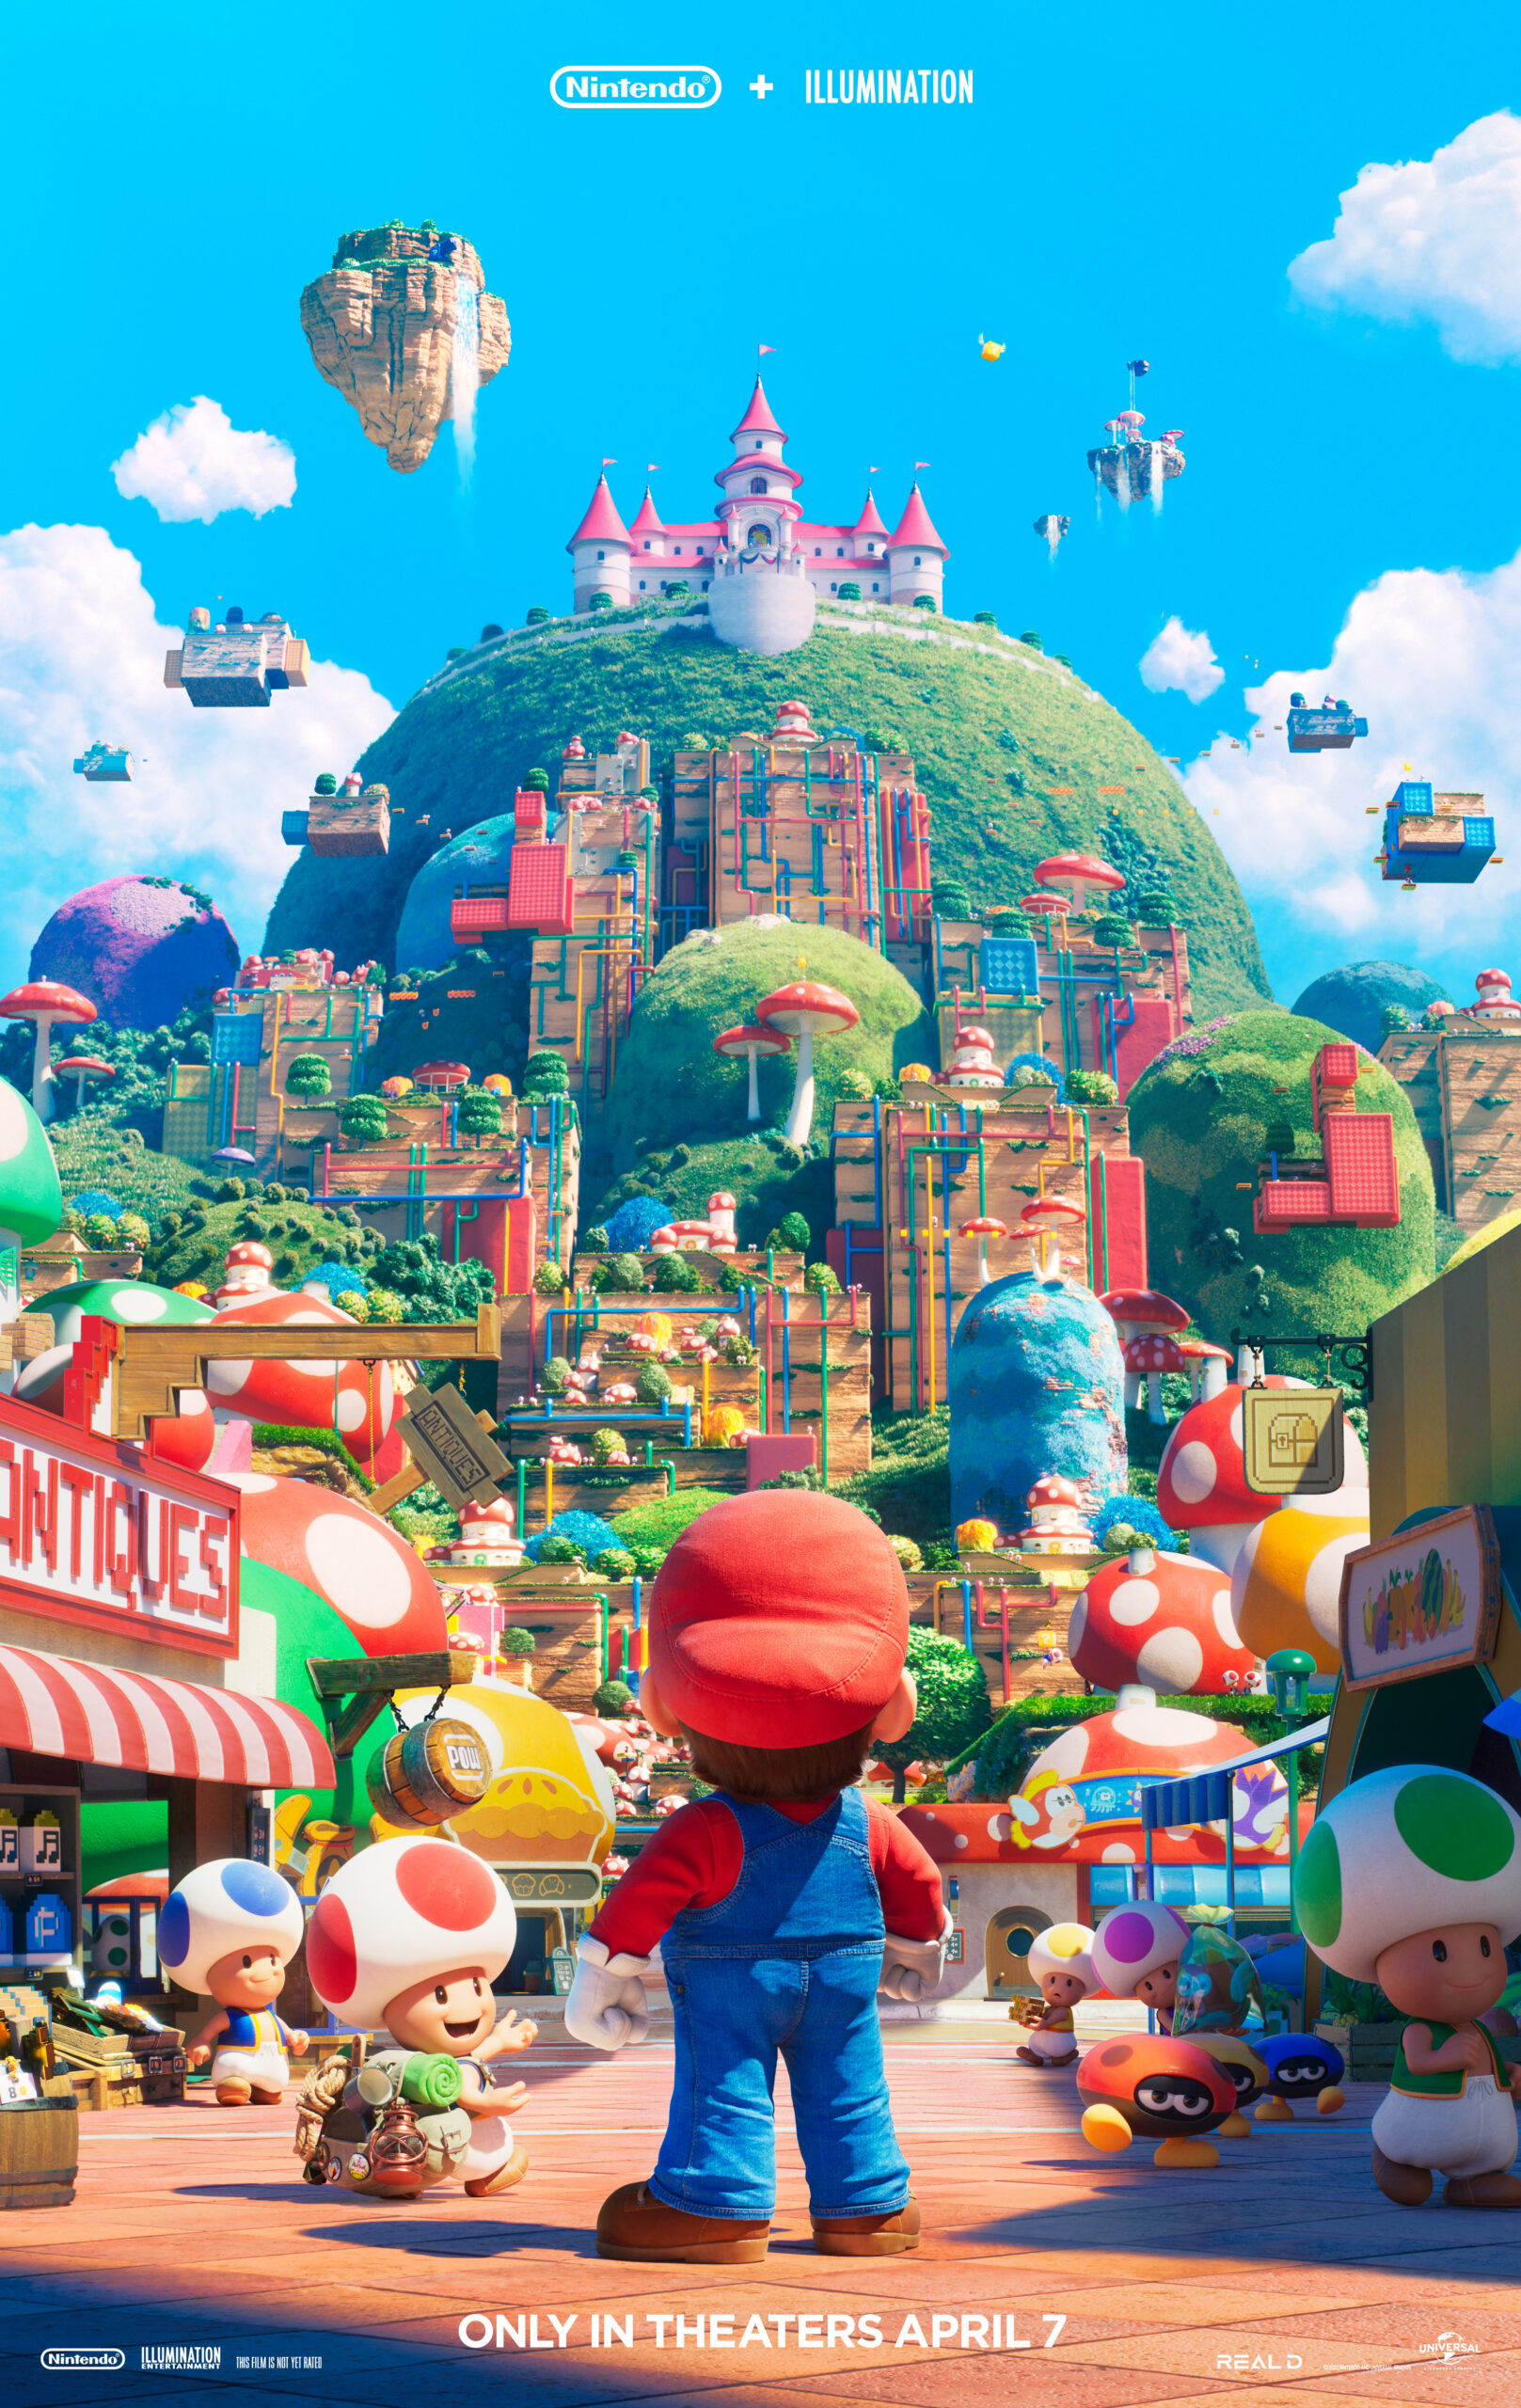 The Super Mario Bros. Movie – Illumination Entertainment